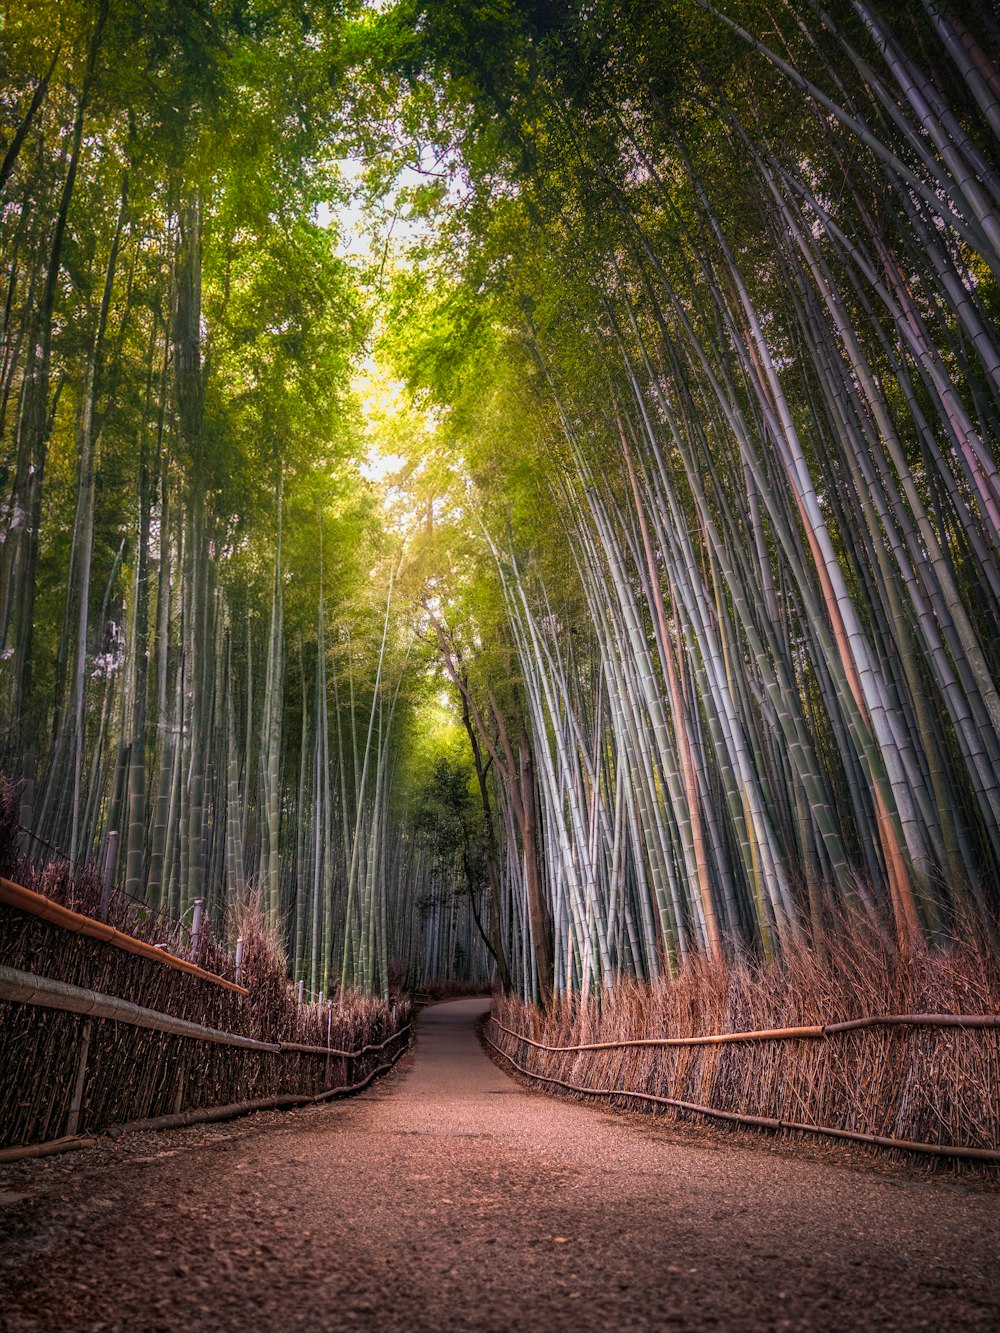 um caminho através de uma floresta de bambu com muitas árvores altas